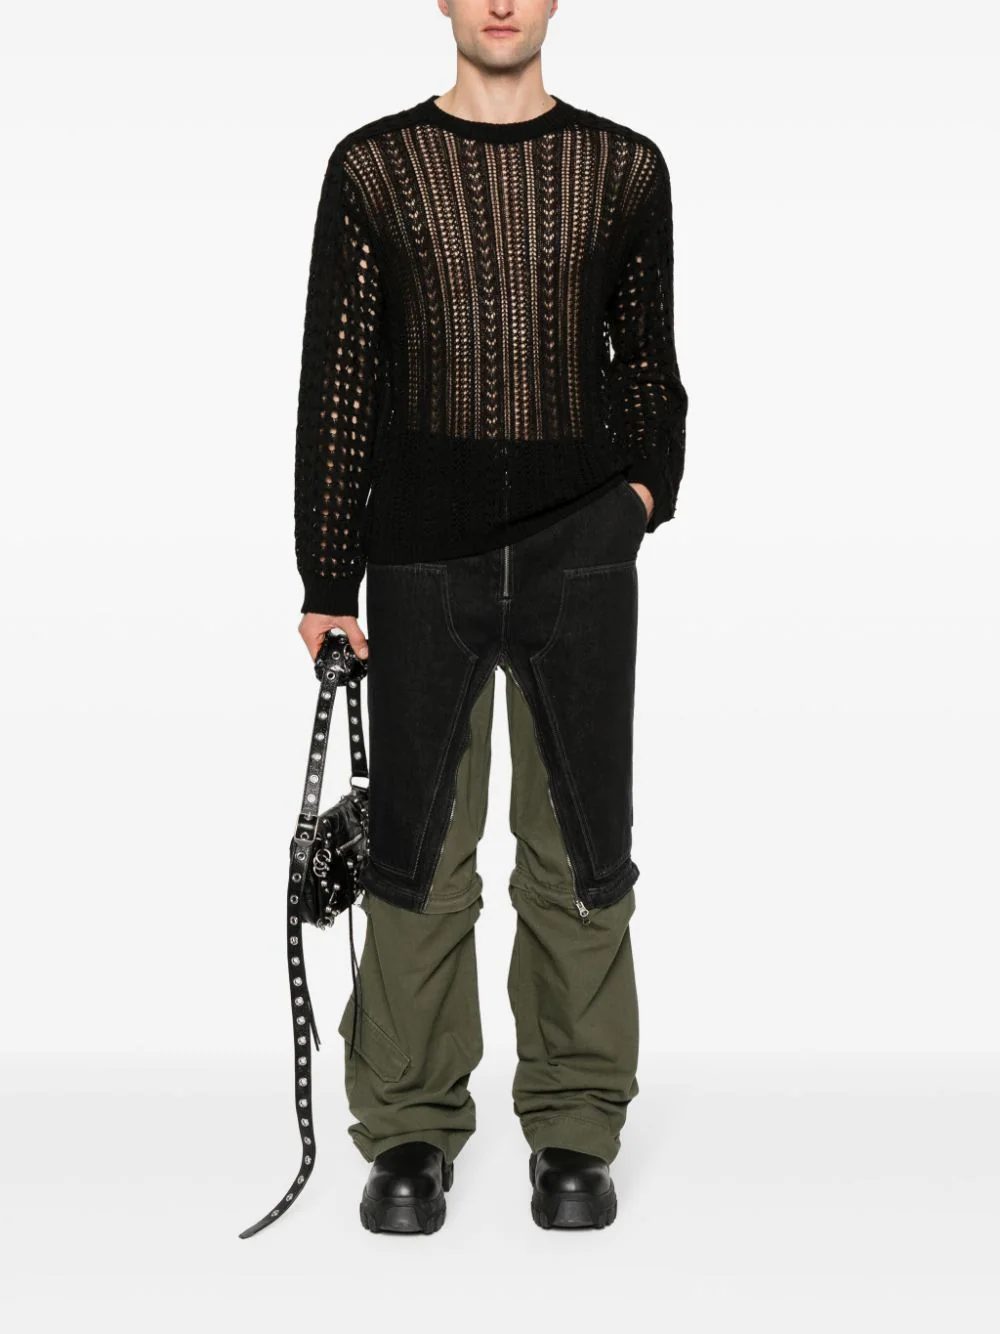 Находки недели: леопардовый костюм Dolce&Gabbana, полупрозрачный вязаный джемпер и очки в стиле «привет из будущего»